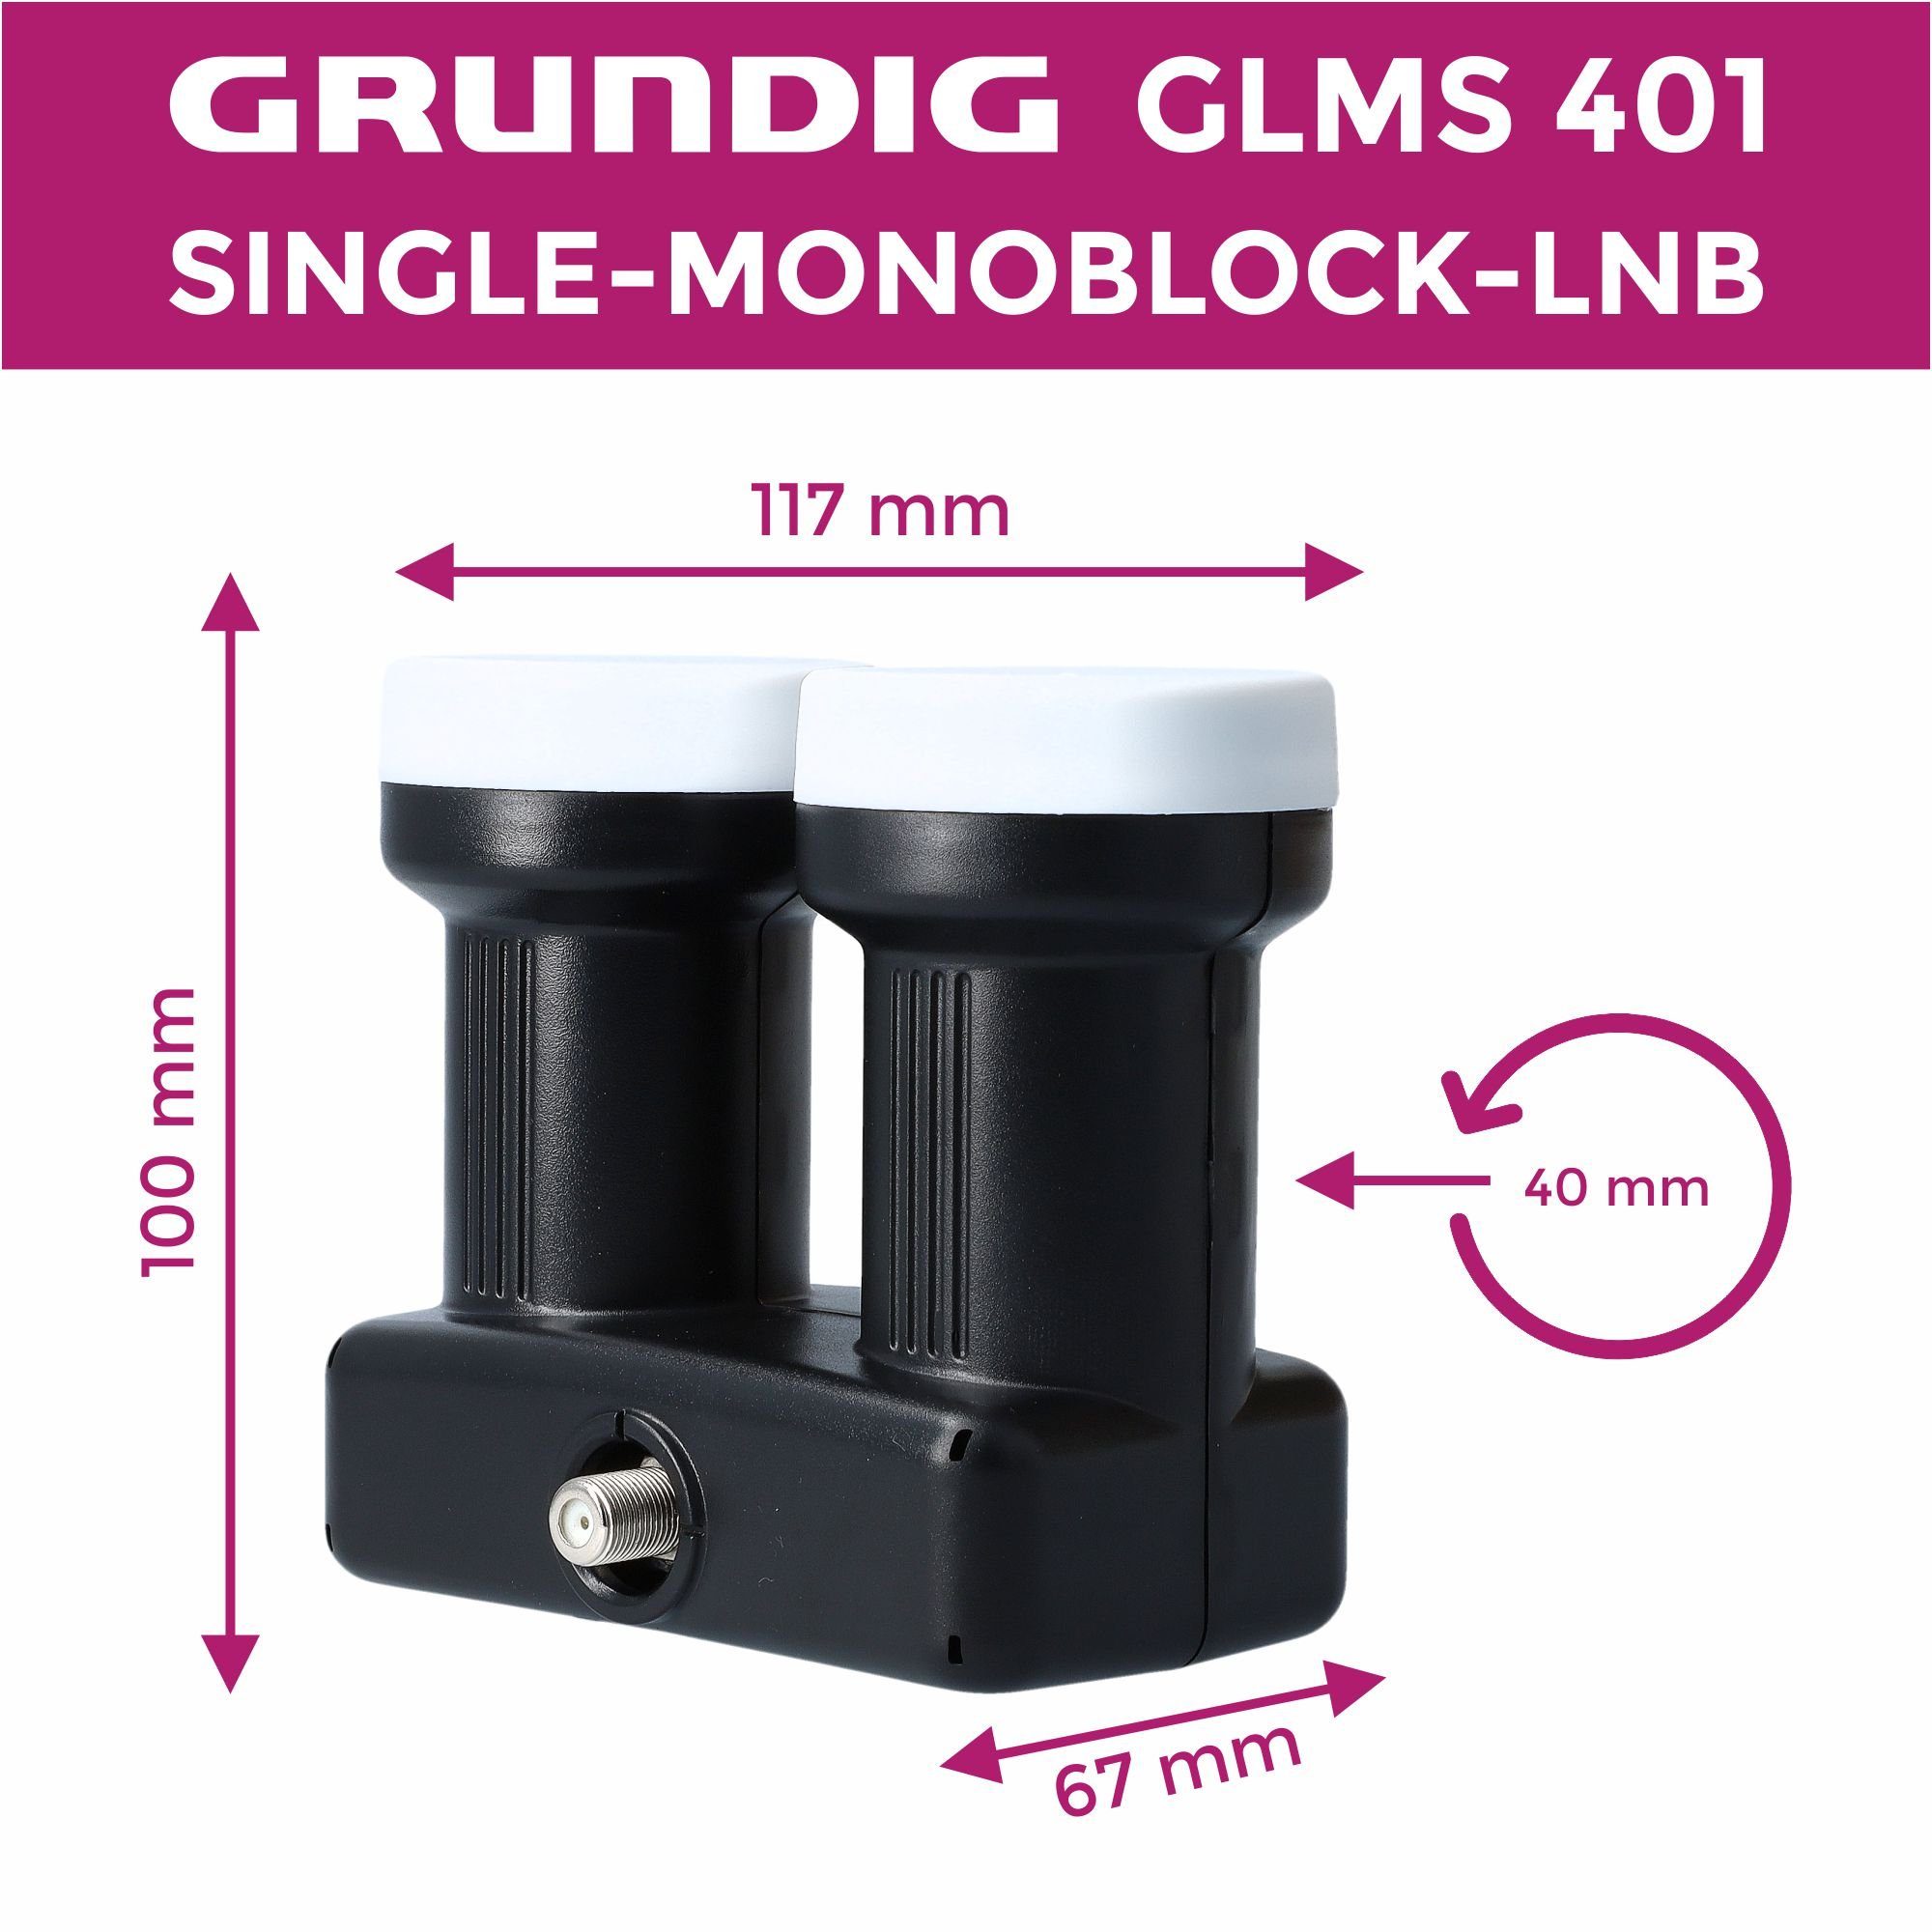 + Monoblock-LNB mit GSS 401 GLMS Gummitülle) Aufdrehhilfe Monoblock Single & Teilnehmer Satelliten 2 -Astra Hotbird (1